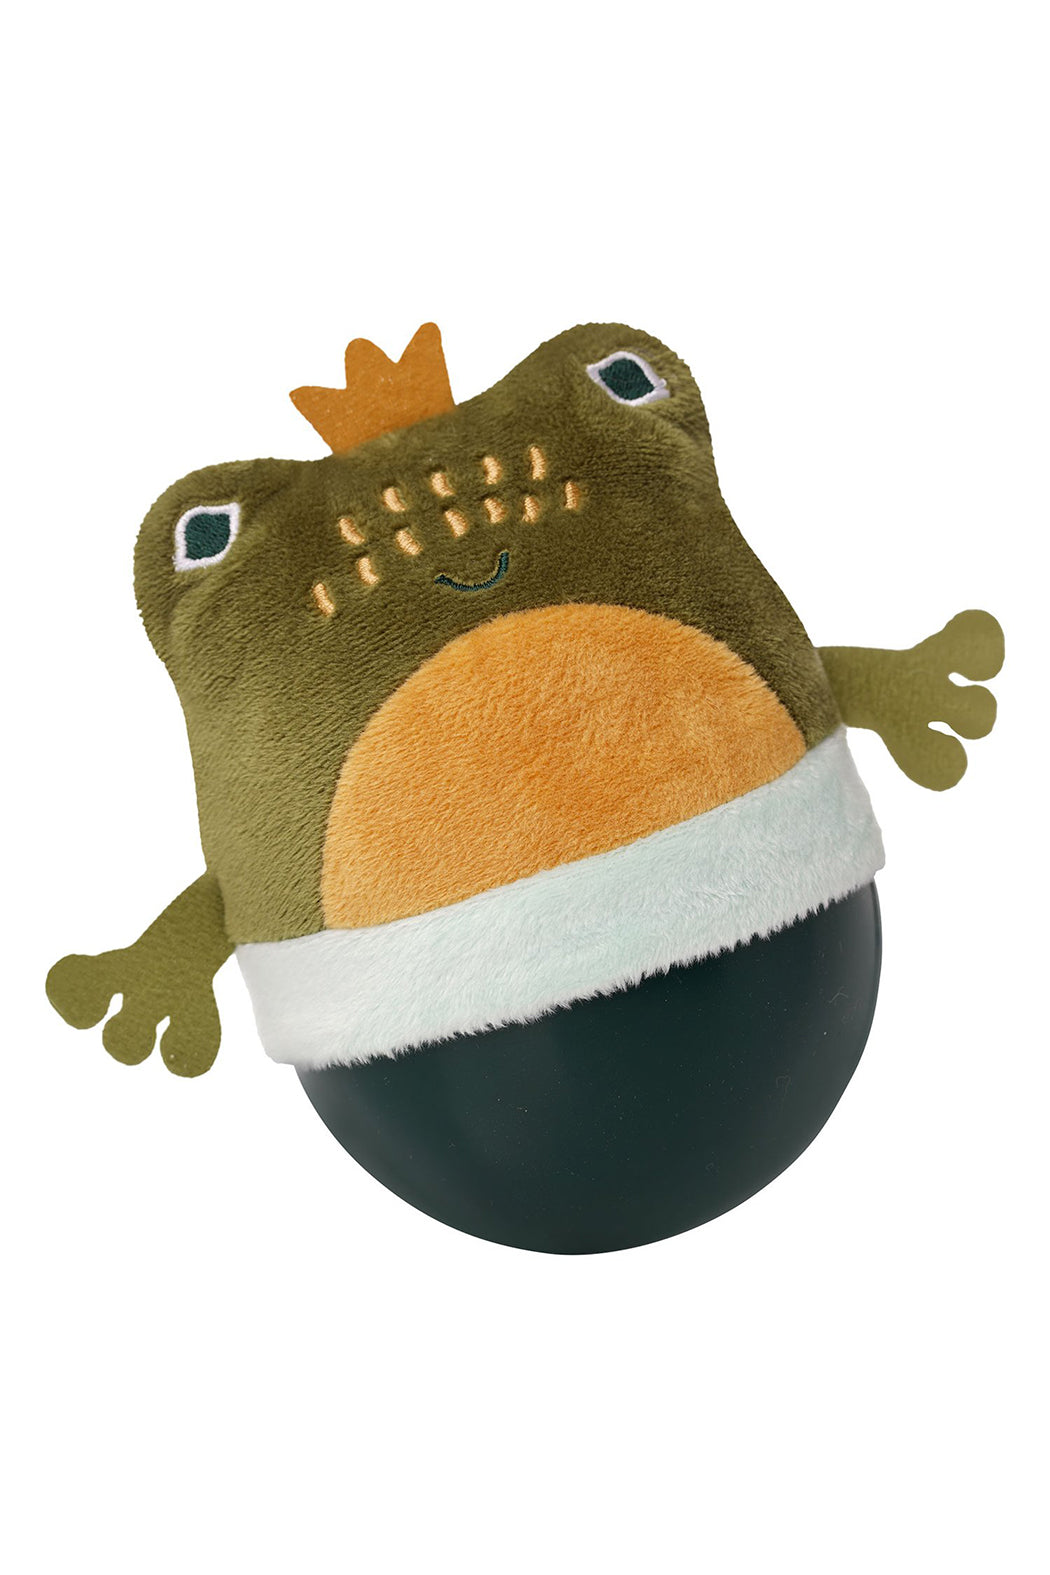 Manhattan Toy Company Wobbly Bobbly Frog